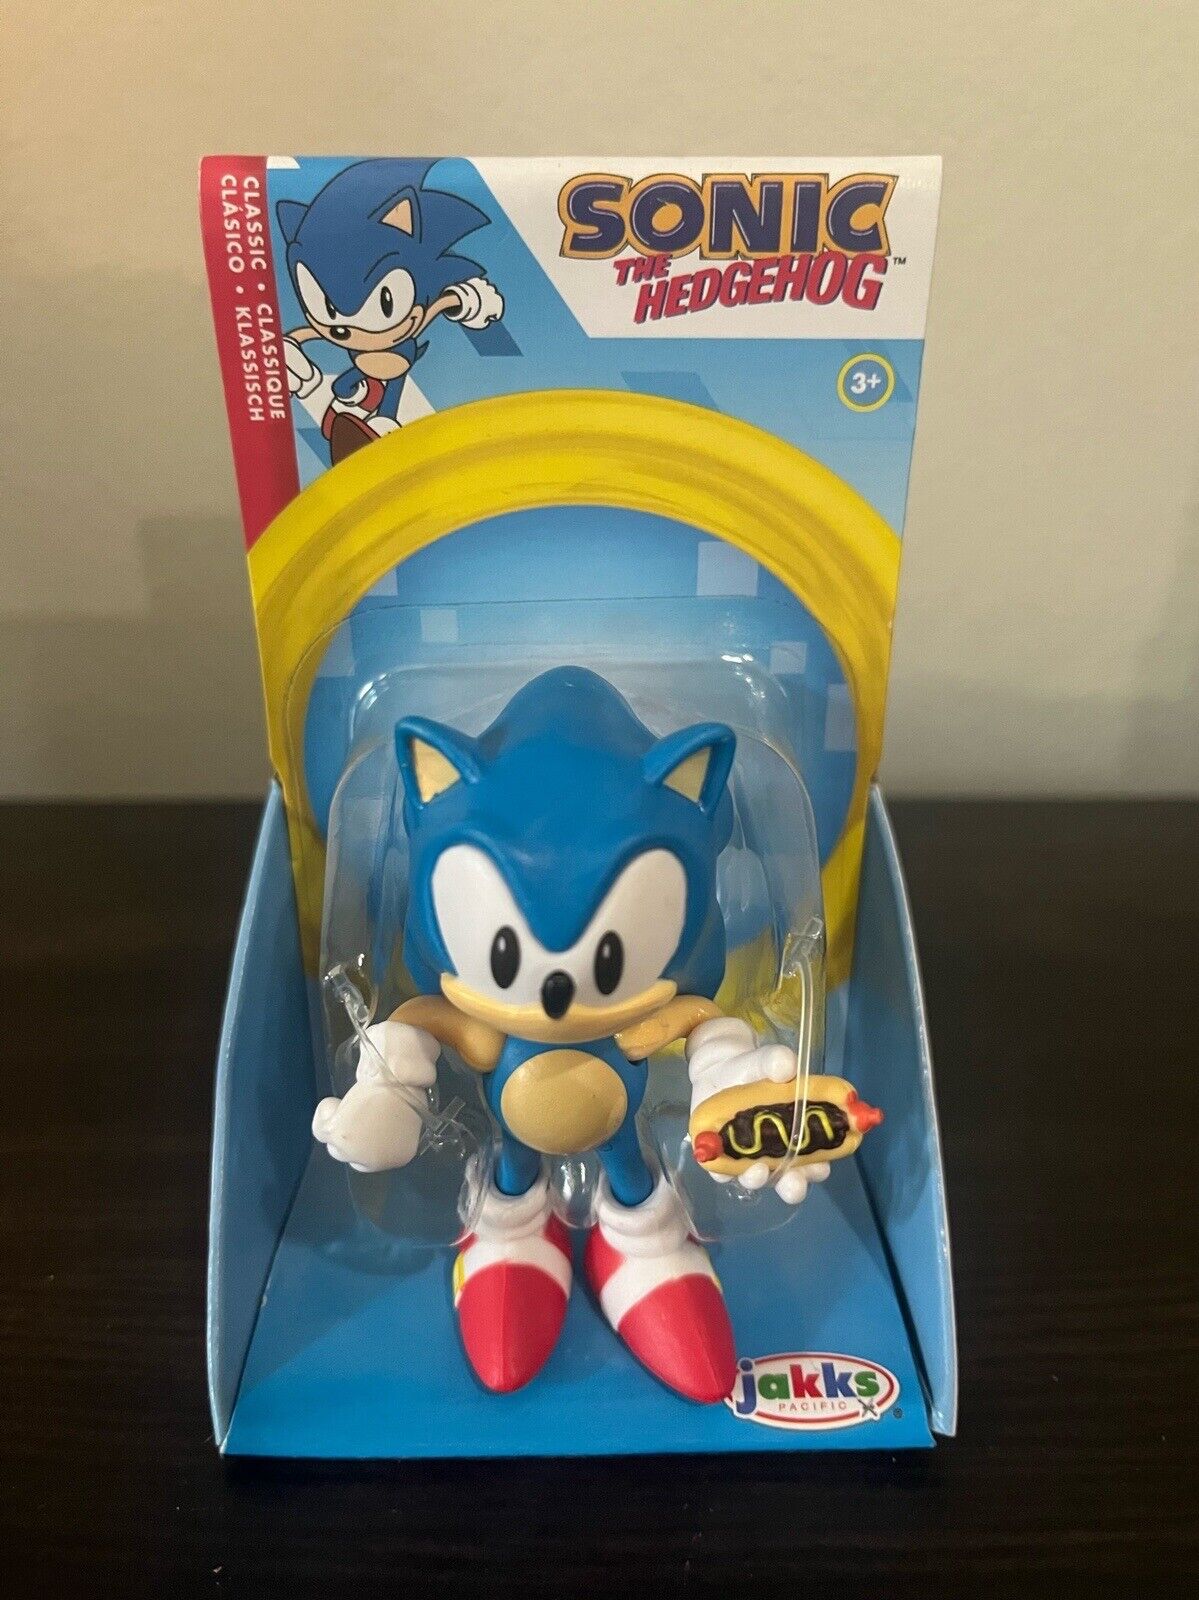 Sonic The Hedgehog Figura de acción clásica de Sonic de 2.5 pulgadas con  juguete coleccionable de Hot Dog